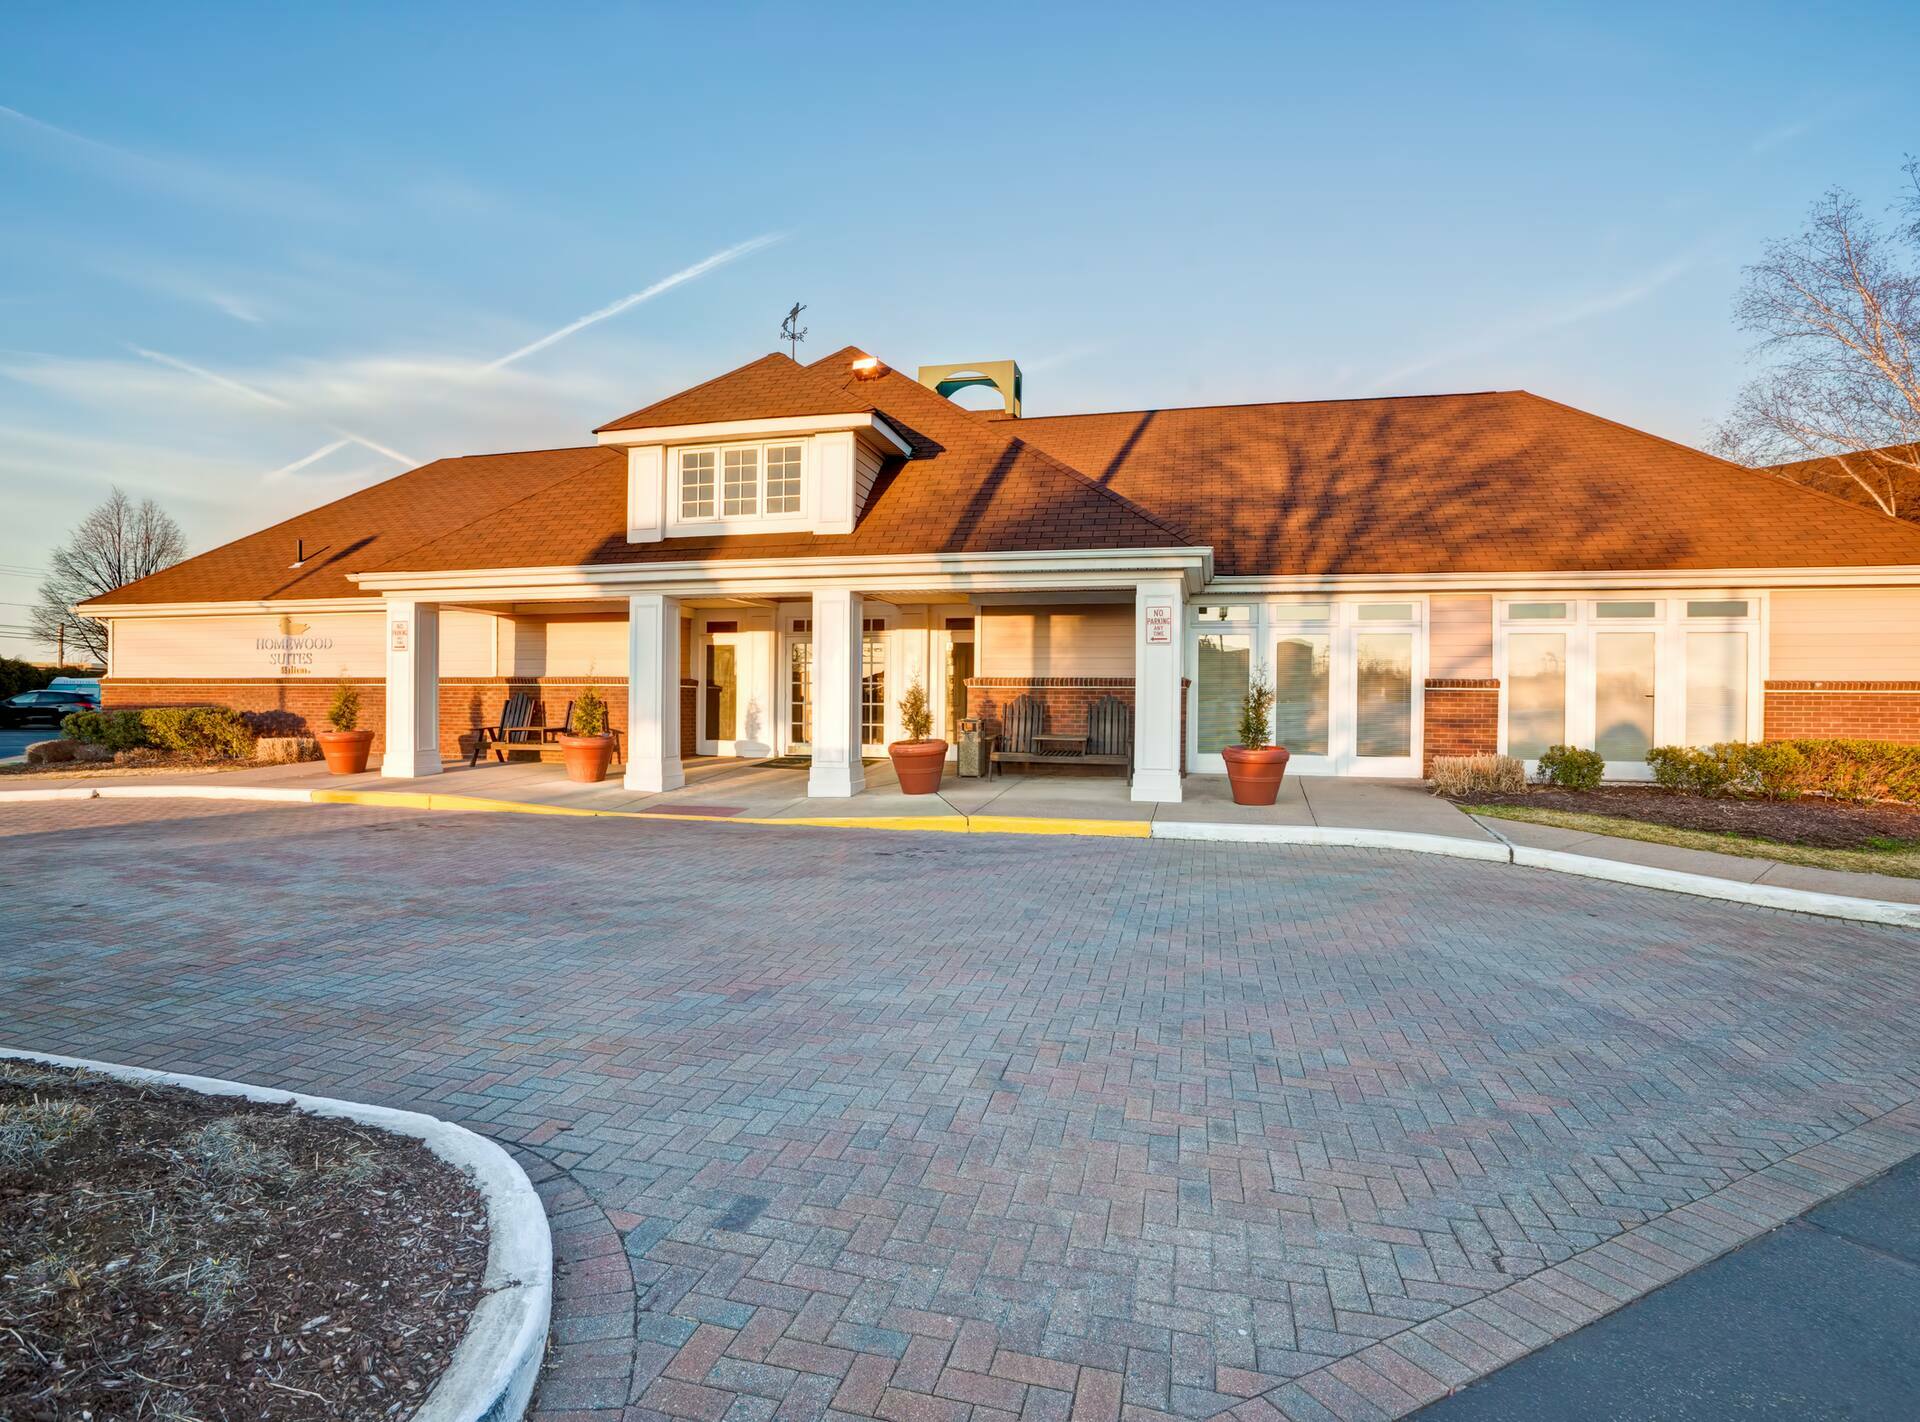 Photo of Homewood Suites by Hilton Windsor Locks Bradley Airport, Windsor Locks, CT